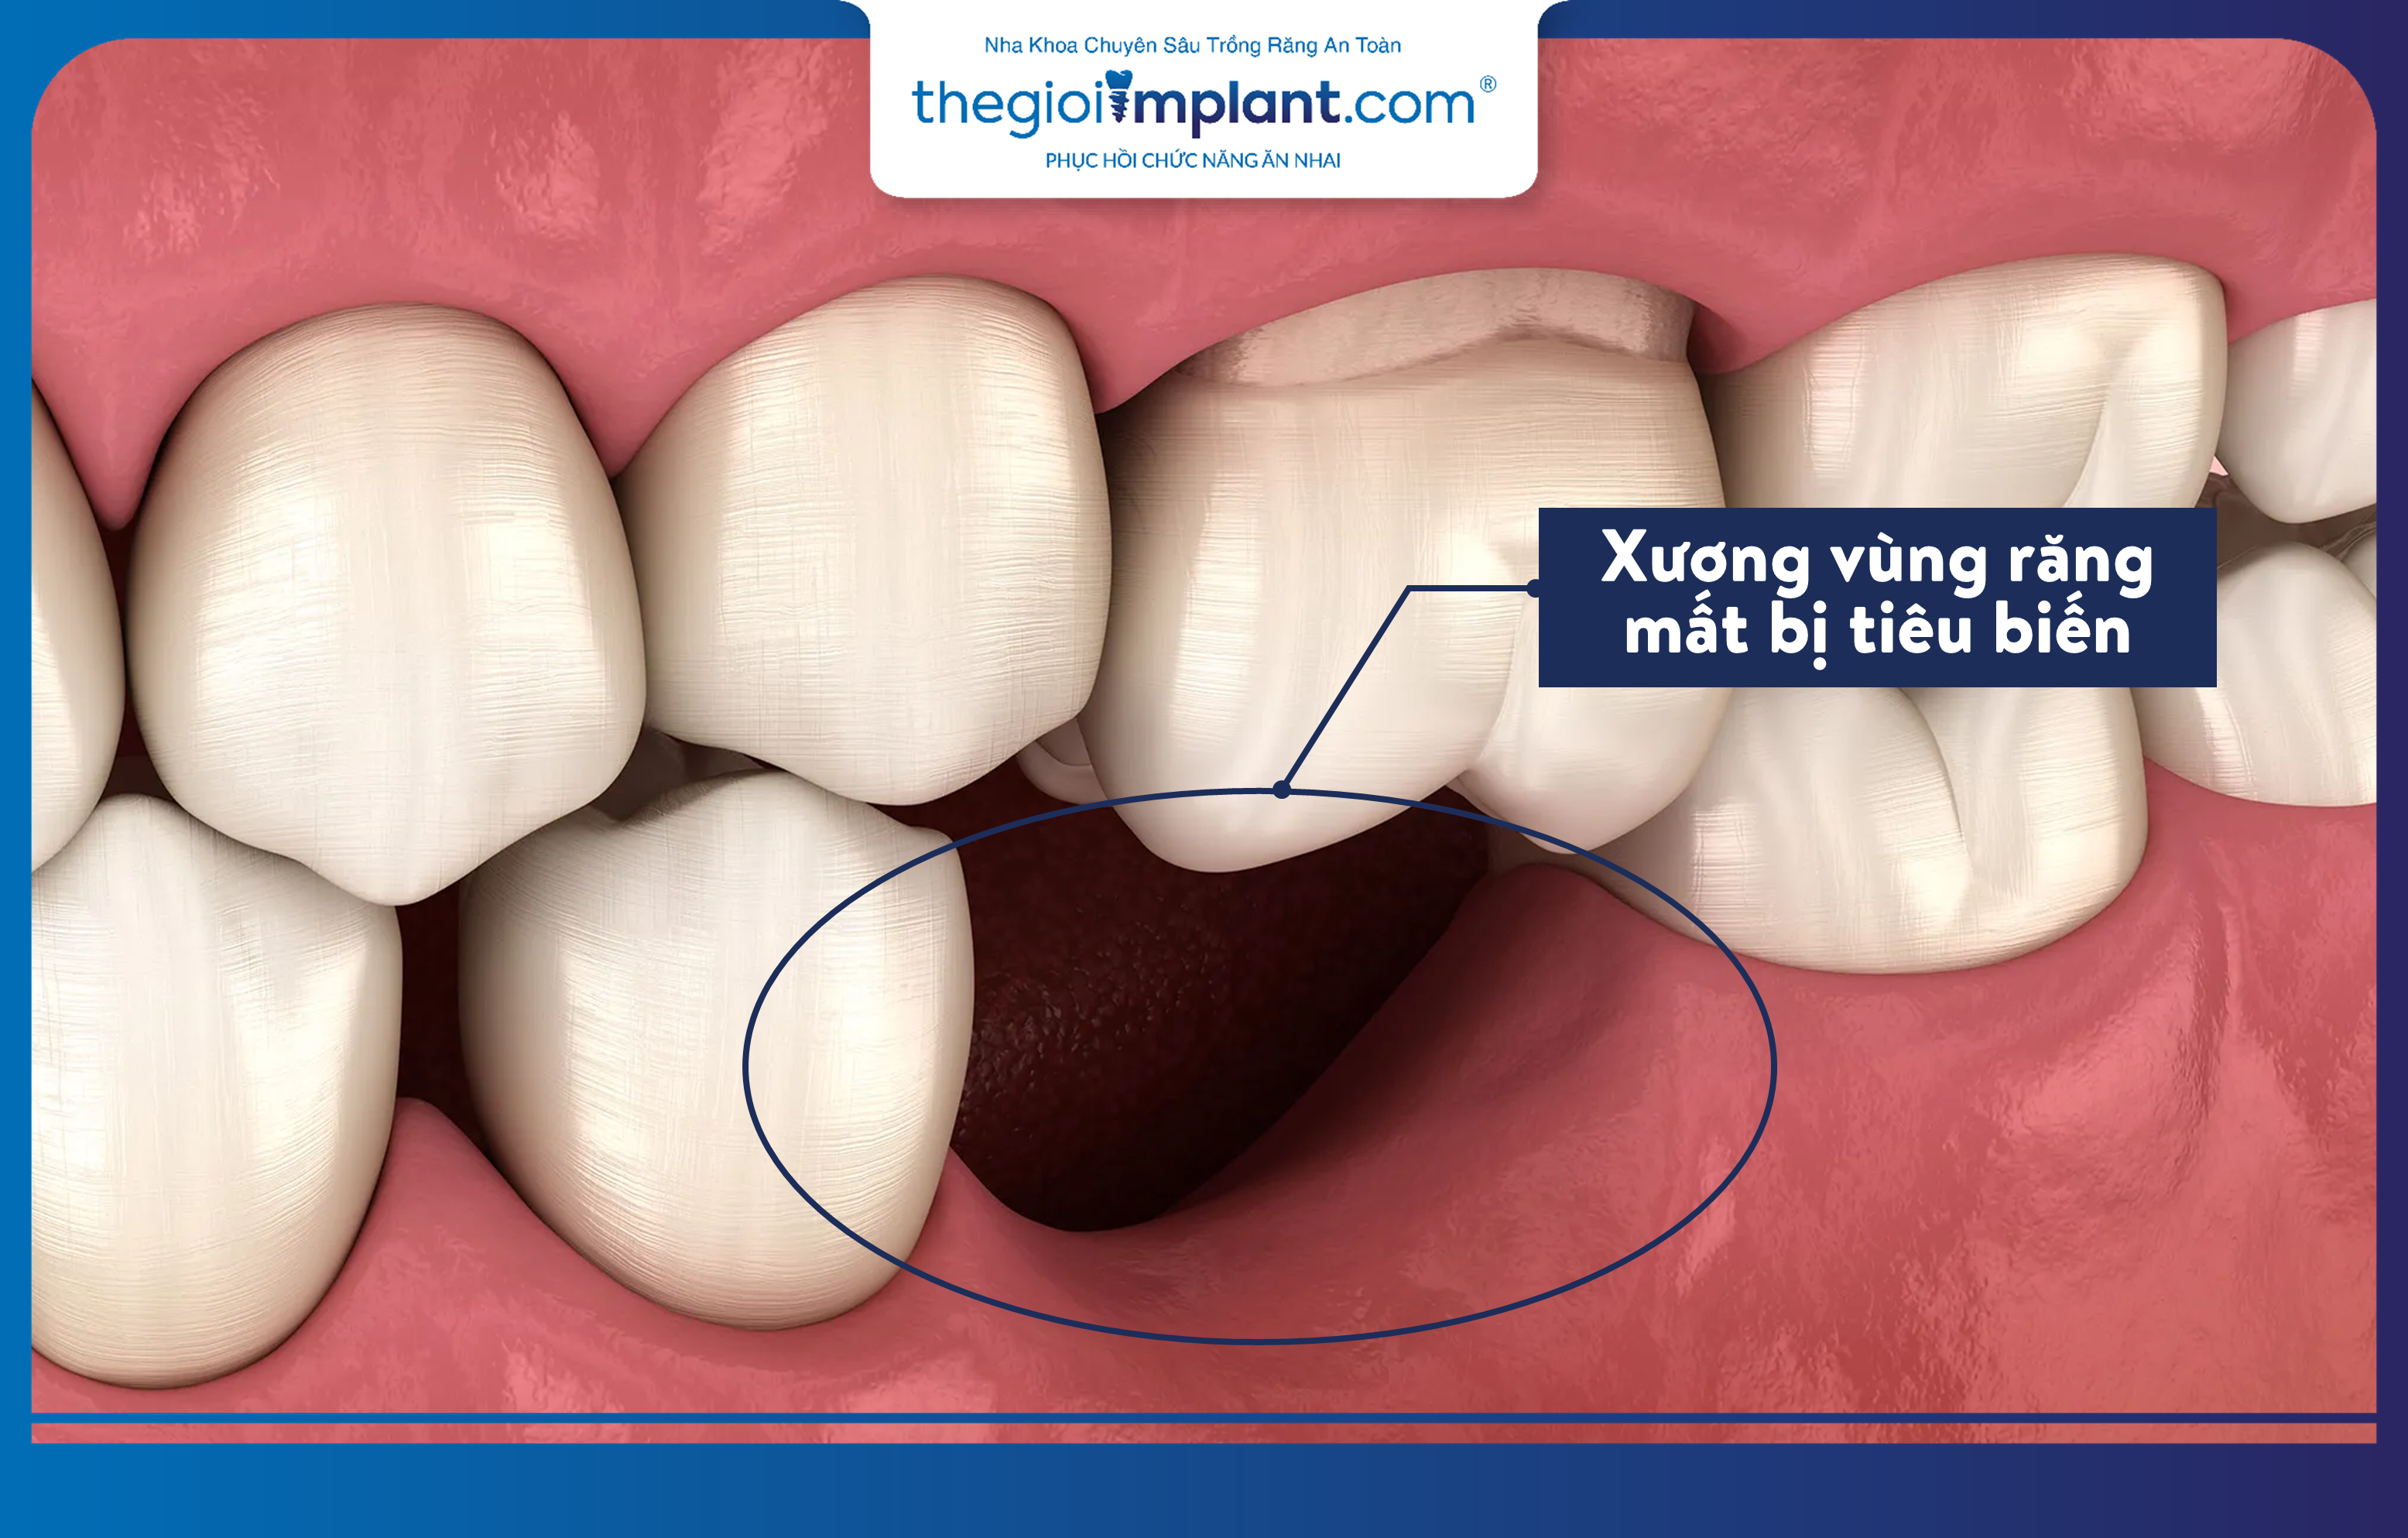 Vùng xương hàm tại vị trí mất răng lâu năm sẽ bị tiêu biến